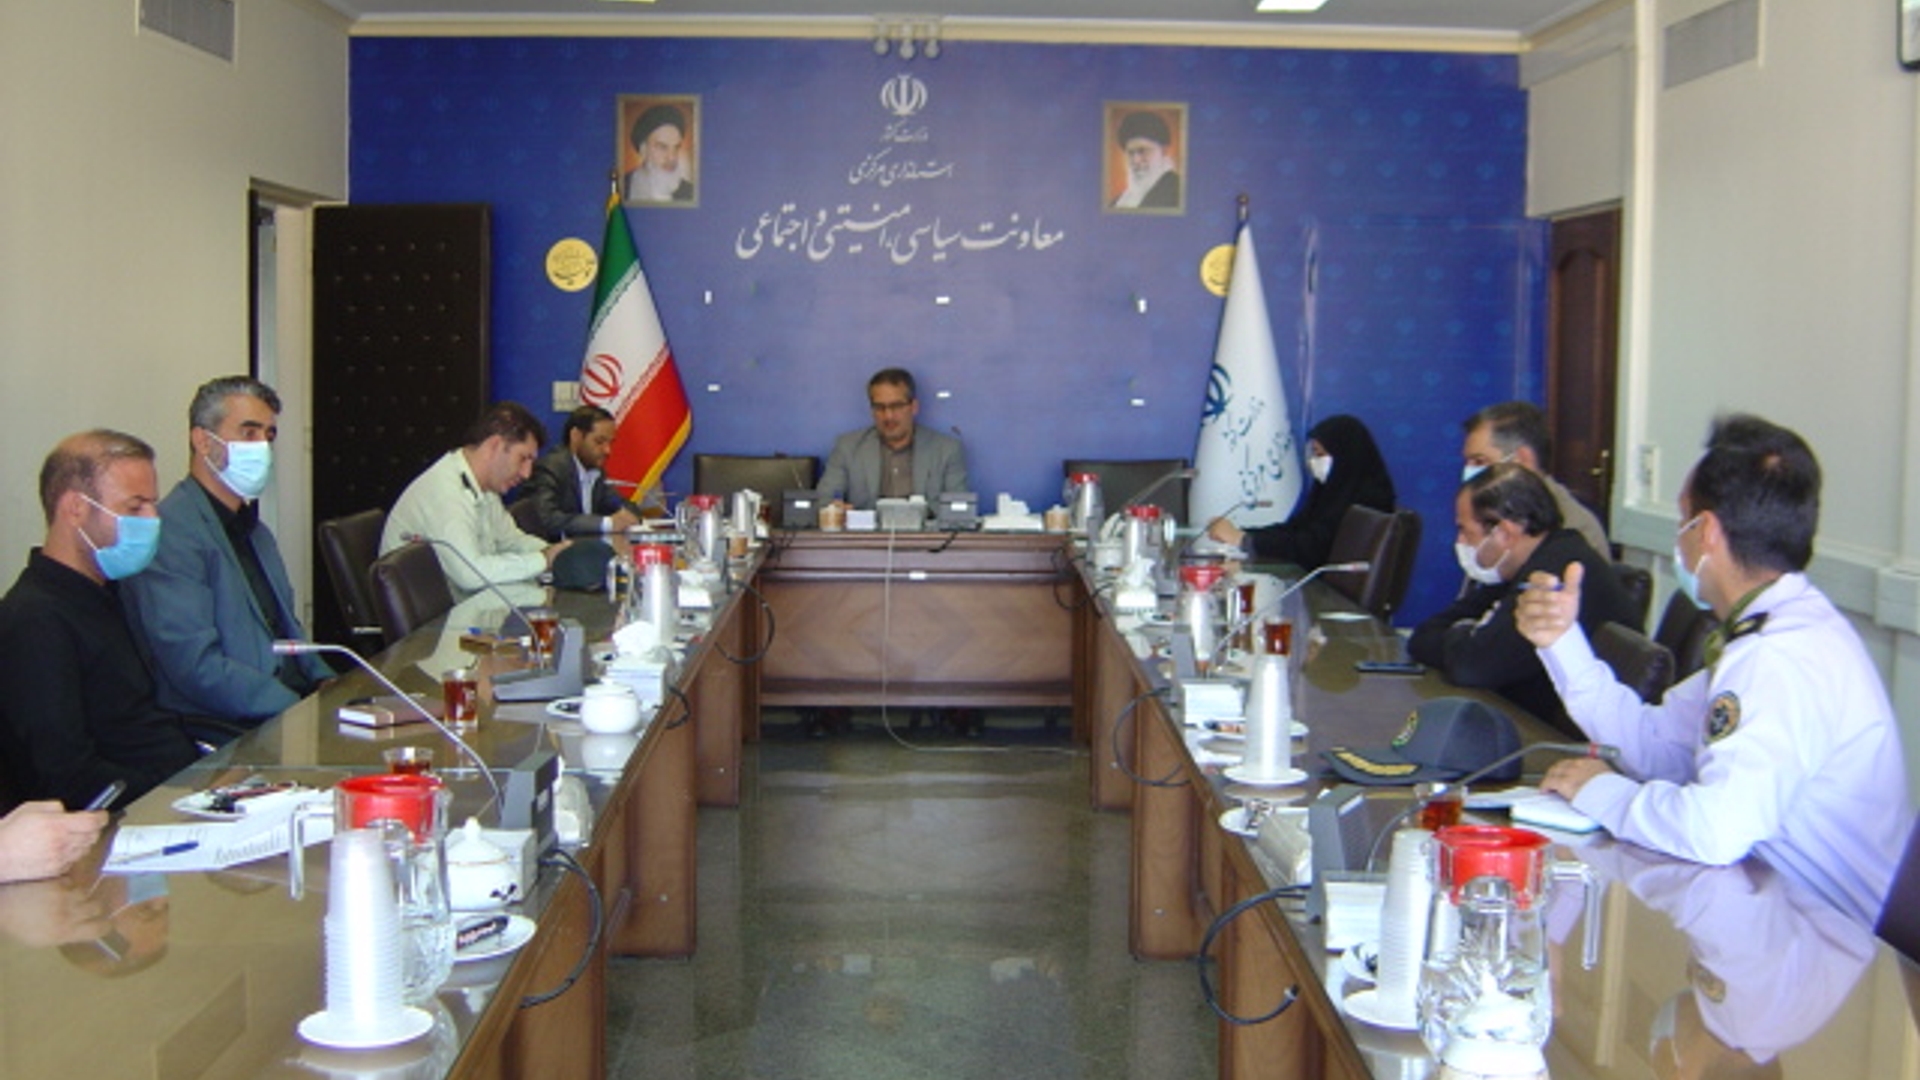 جلسه کمیسیون پیشگیری و مقابله با تروریسم استان در مورخ 1401-6-1 به ریاست آقای رحیمی تبار مدیر کل امنیتی و انتظامی برگزار گردید.